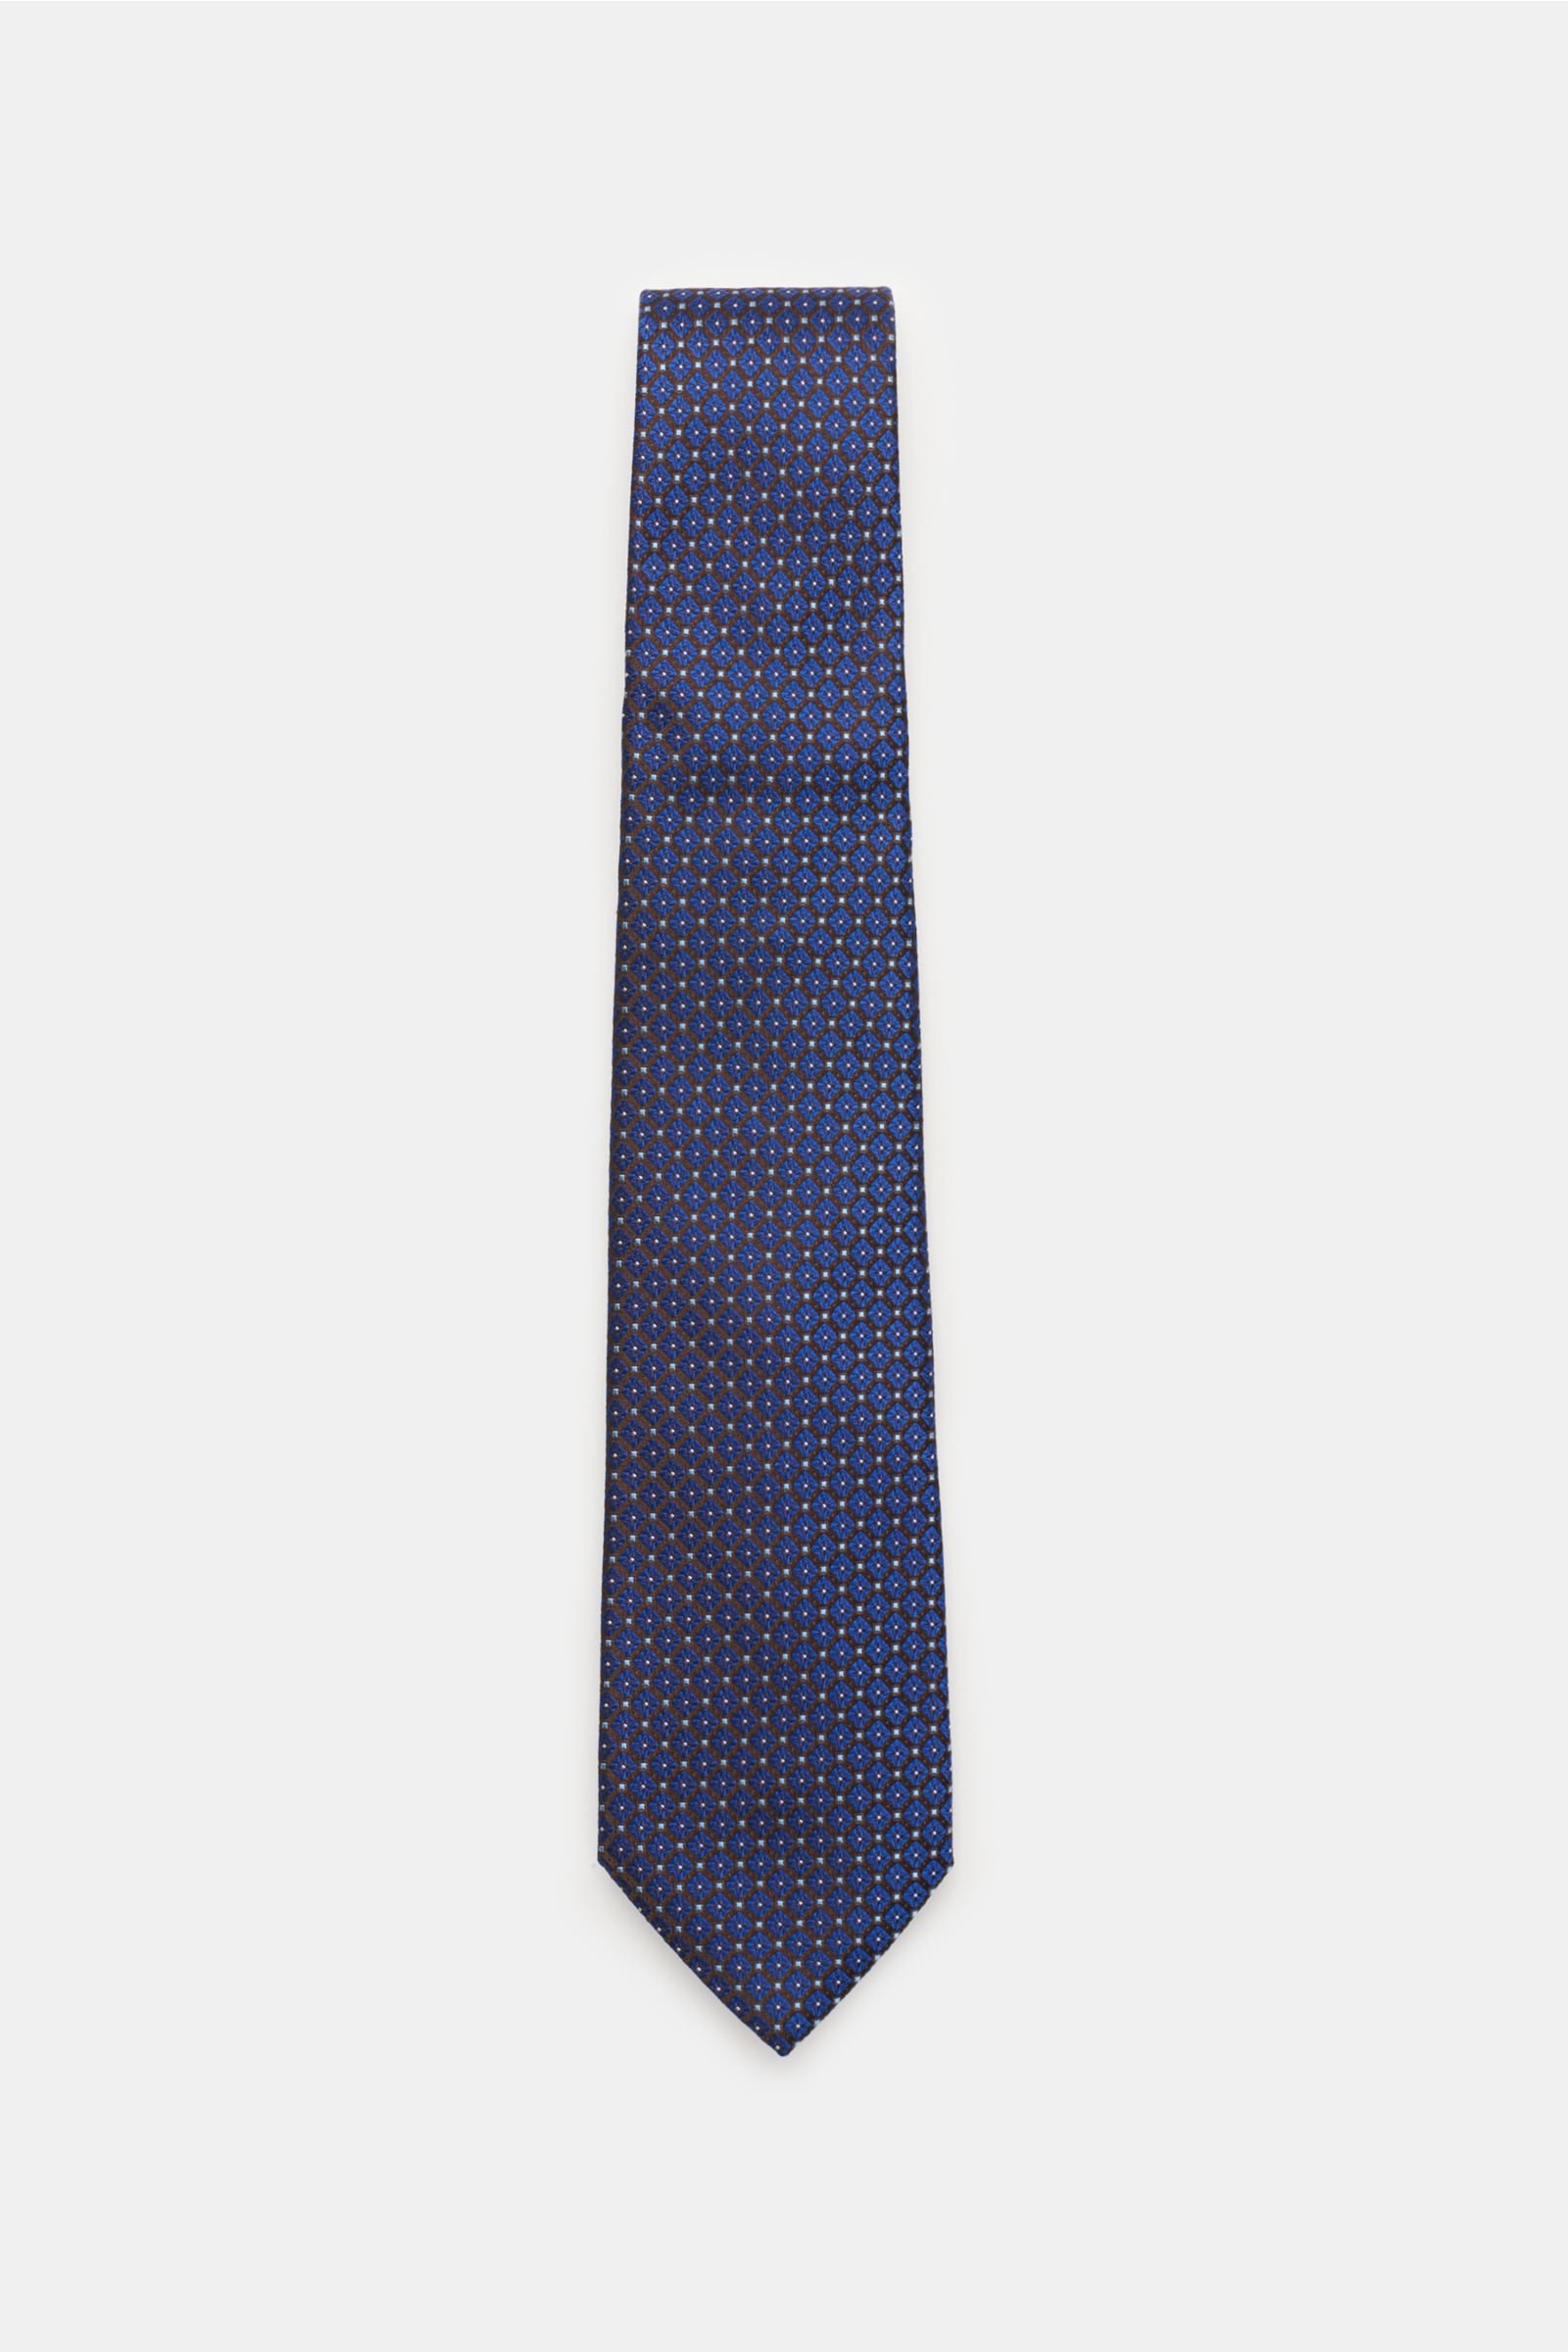 Silk tie brown/navy patterned